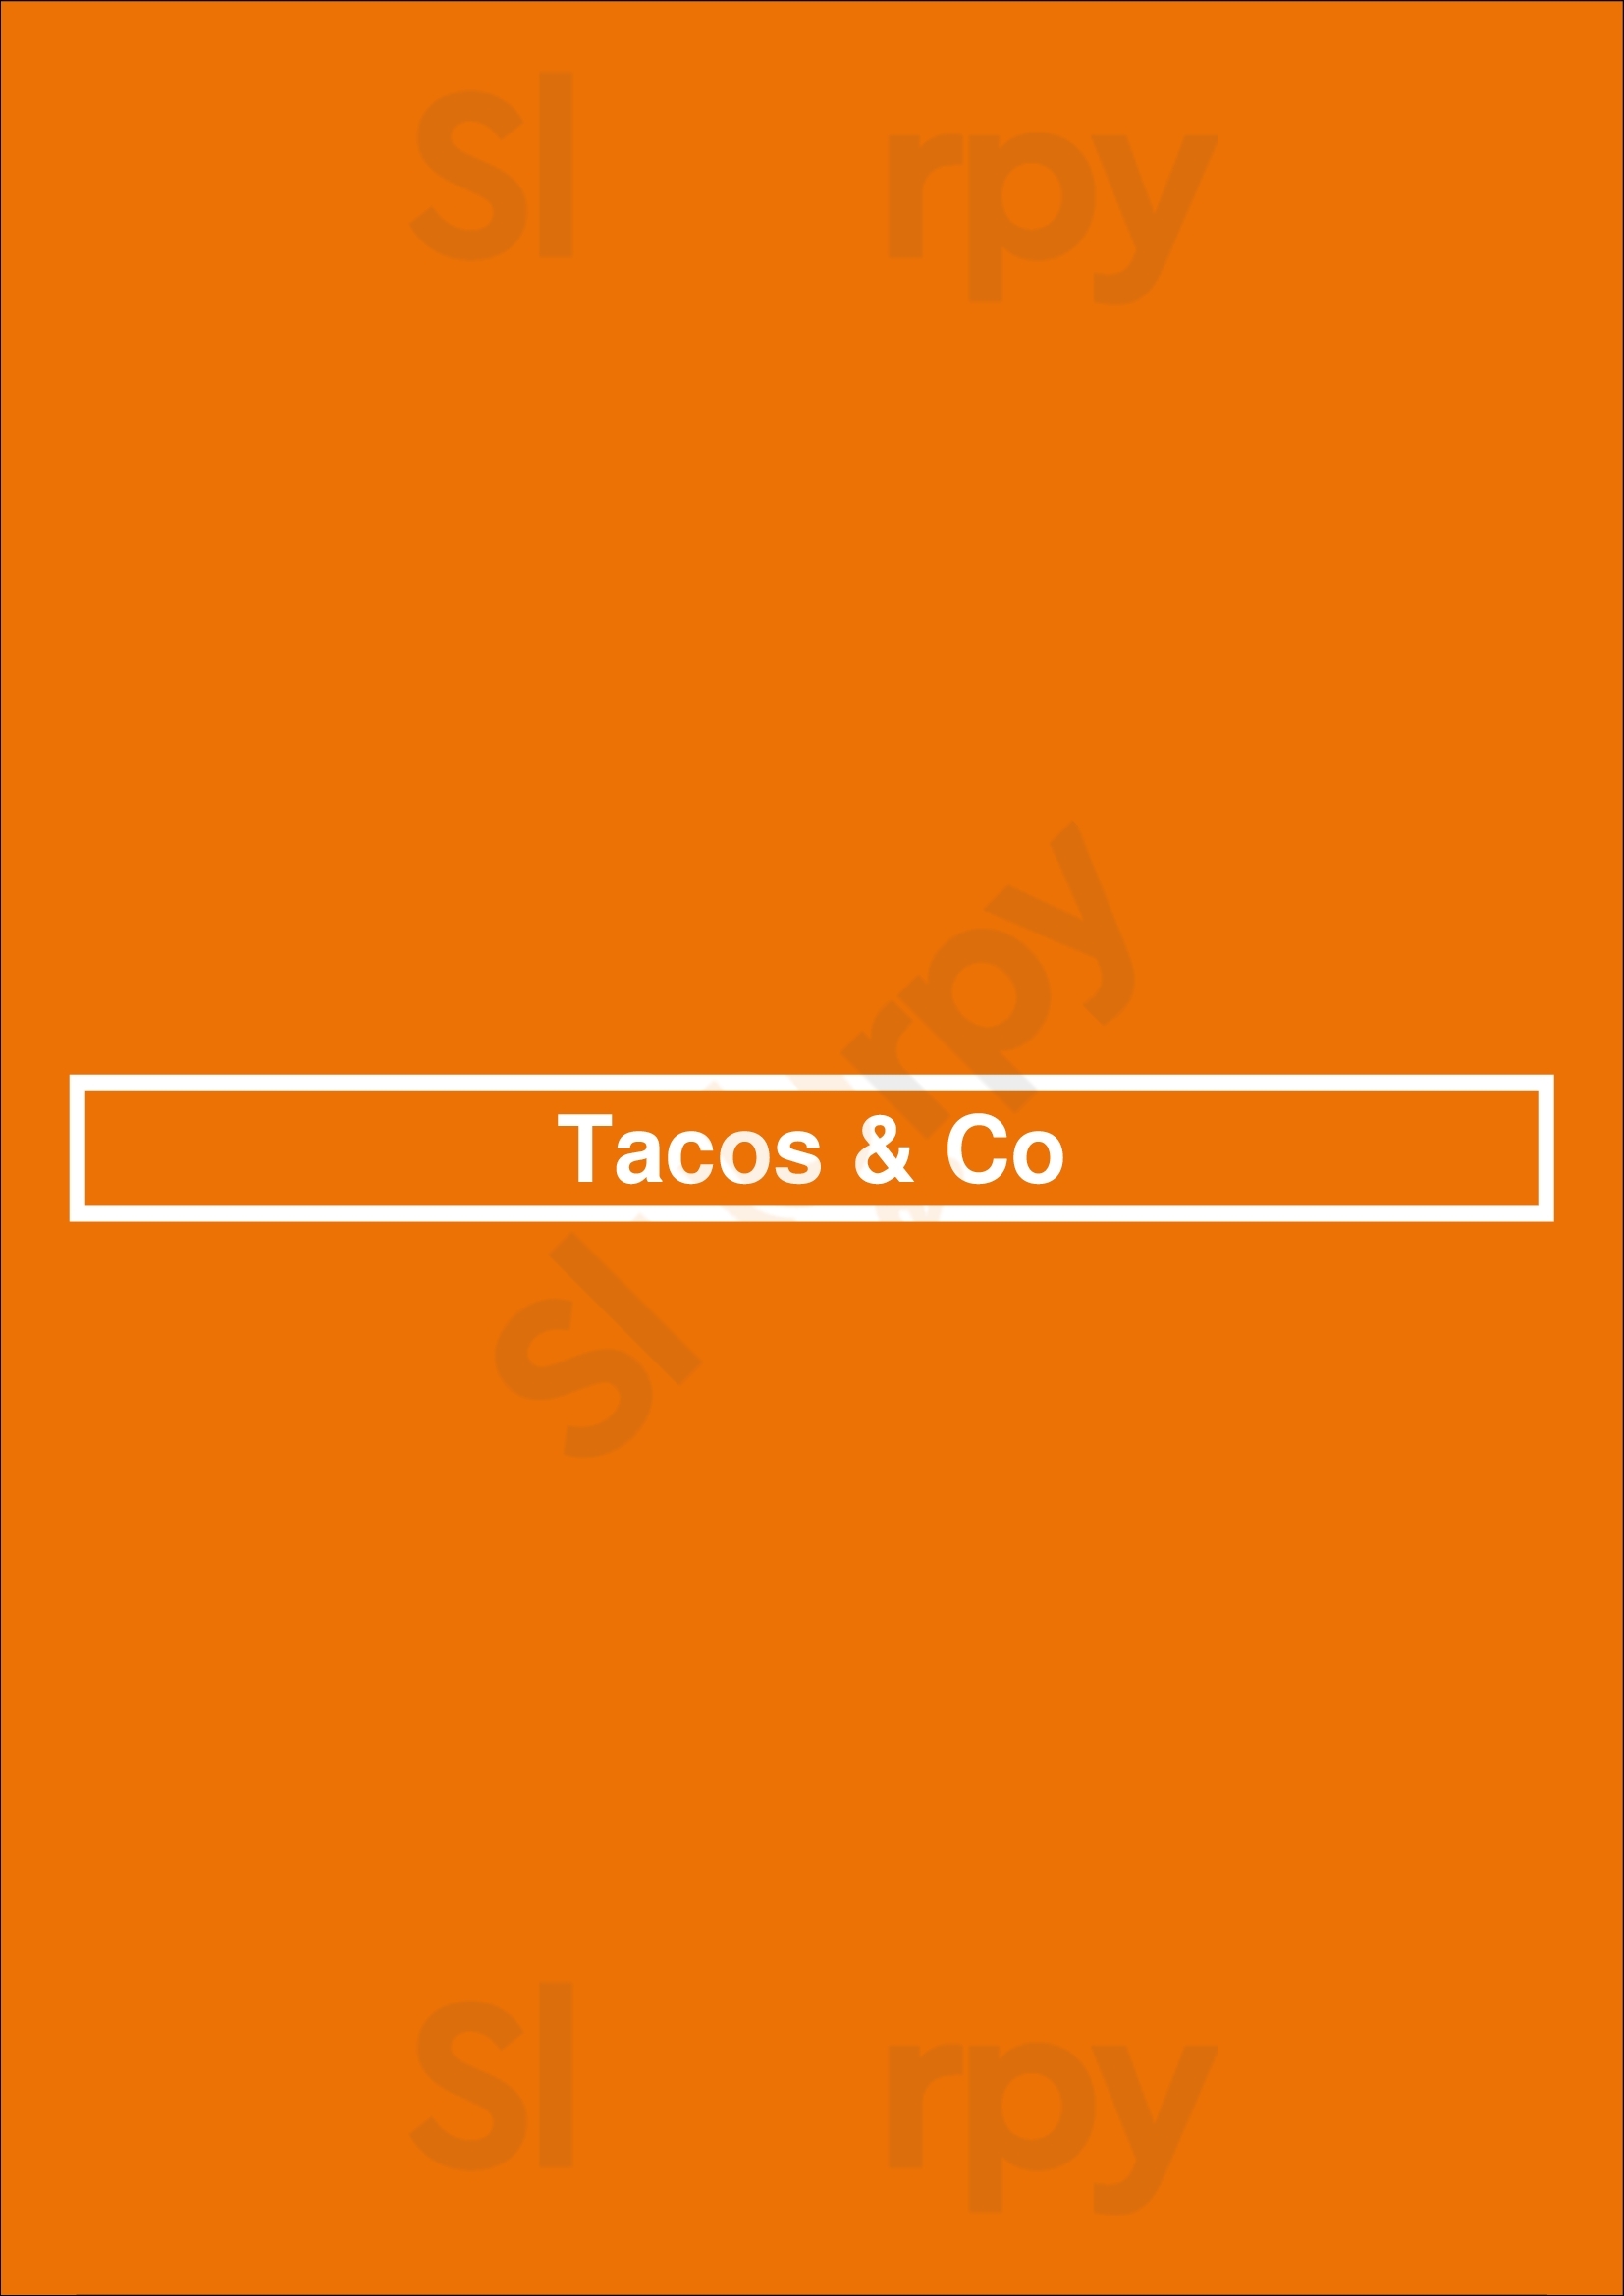 Tacos & Co Newport Beach Menu - 1